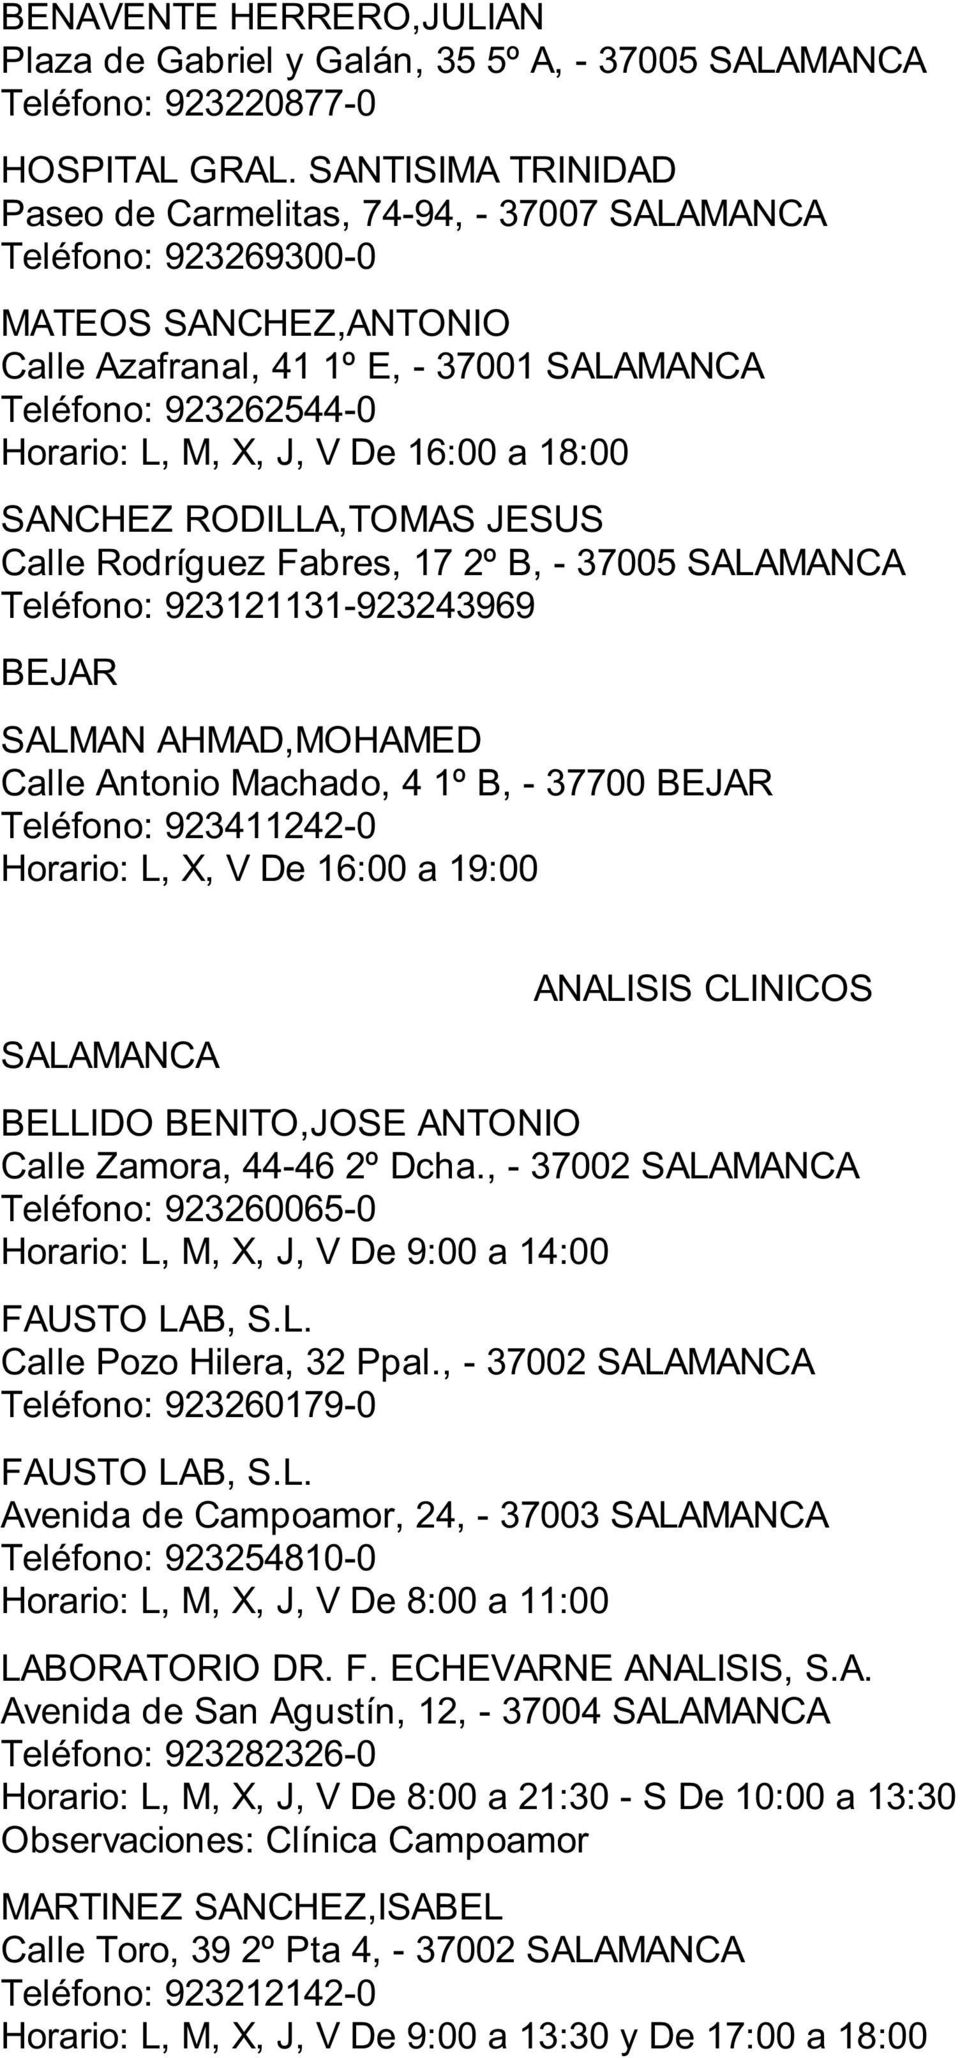 Machado, 4 1º B, - 37700 BEJAR Teléfono: 923411242-0 Horario: L, X, V De 16:00 a 19:00 ANALISIS CLINICOS BELLIDO BENITO,JOSE ANTONIO Calle Zamora, 44-46 2º Dcha.